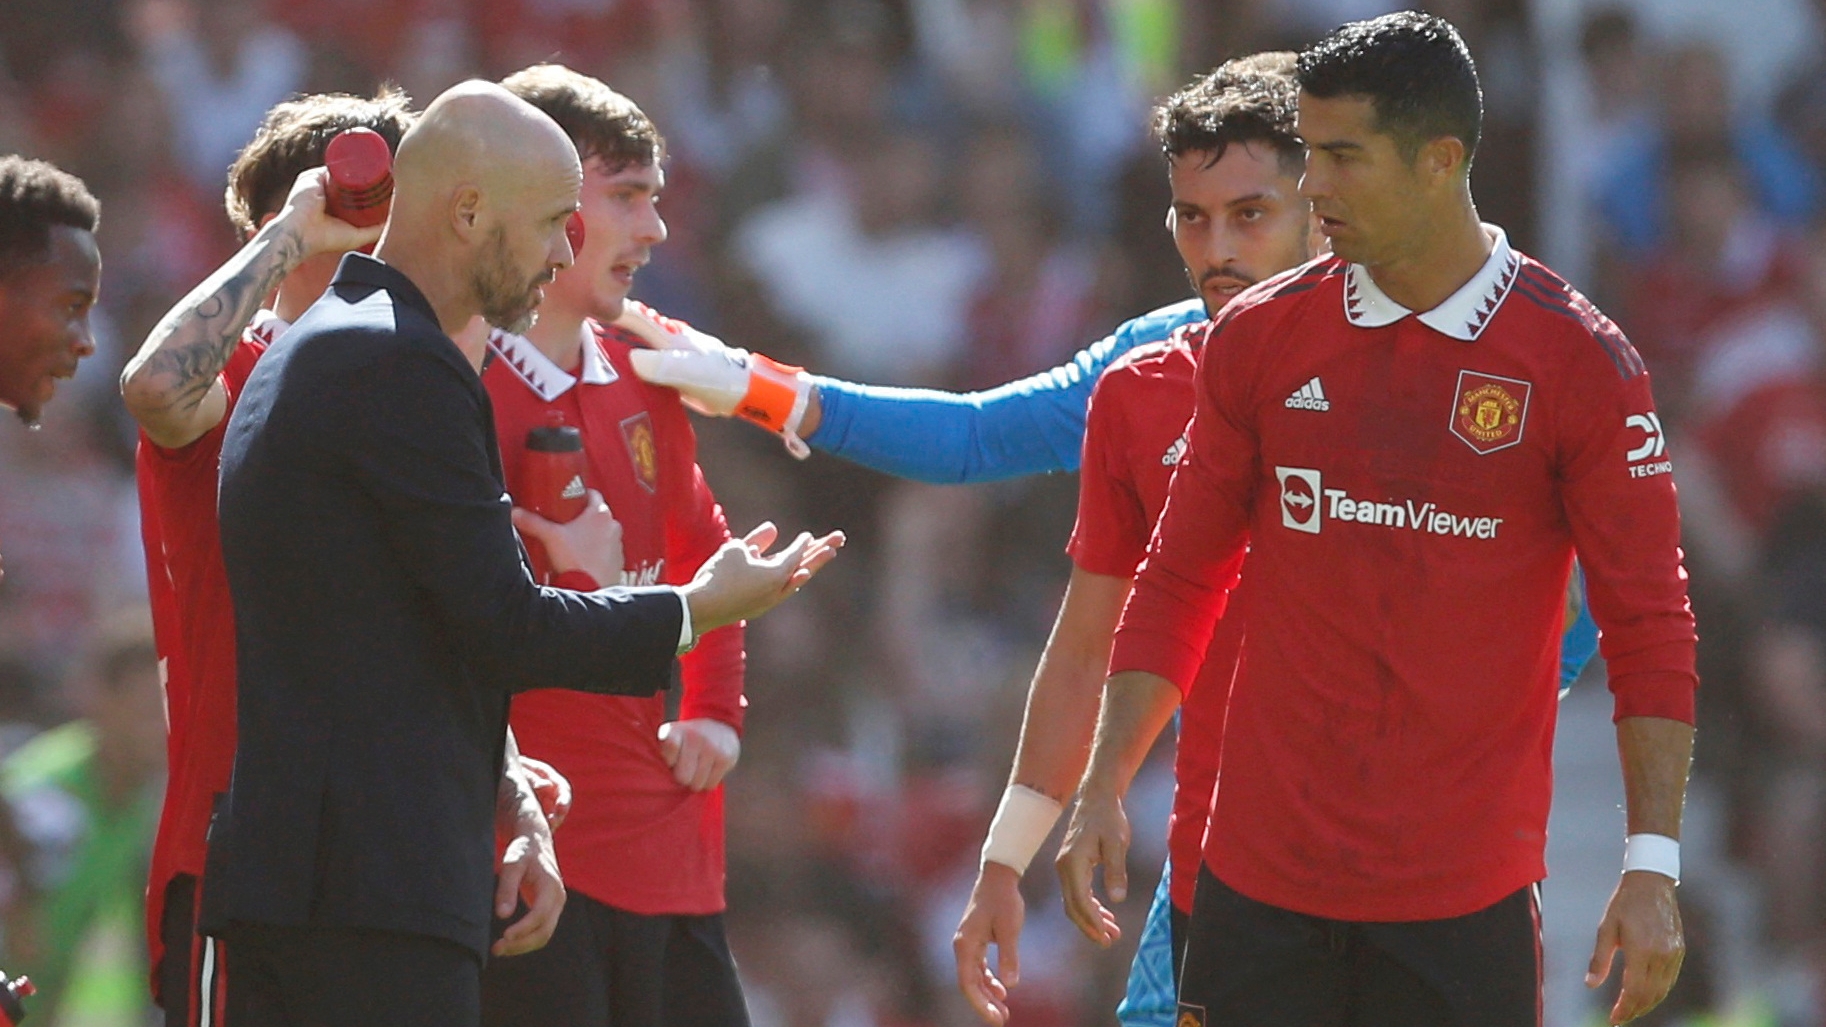 La reunión que dinamitó la relación entre el técnico del Manchester United  y Ronaldo: “Se hartó de Cristiano” - Infobae